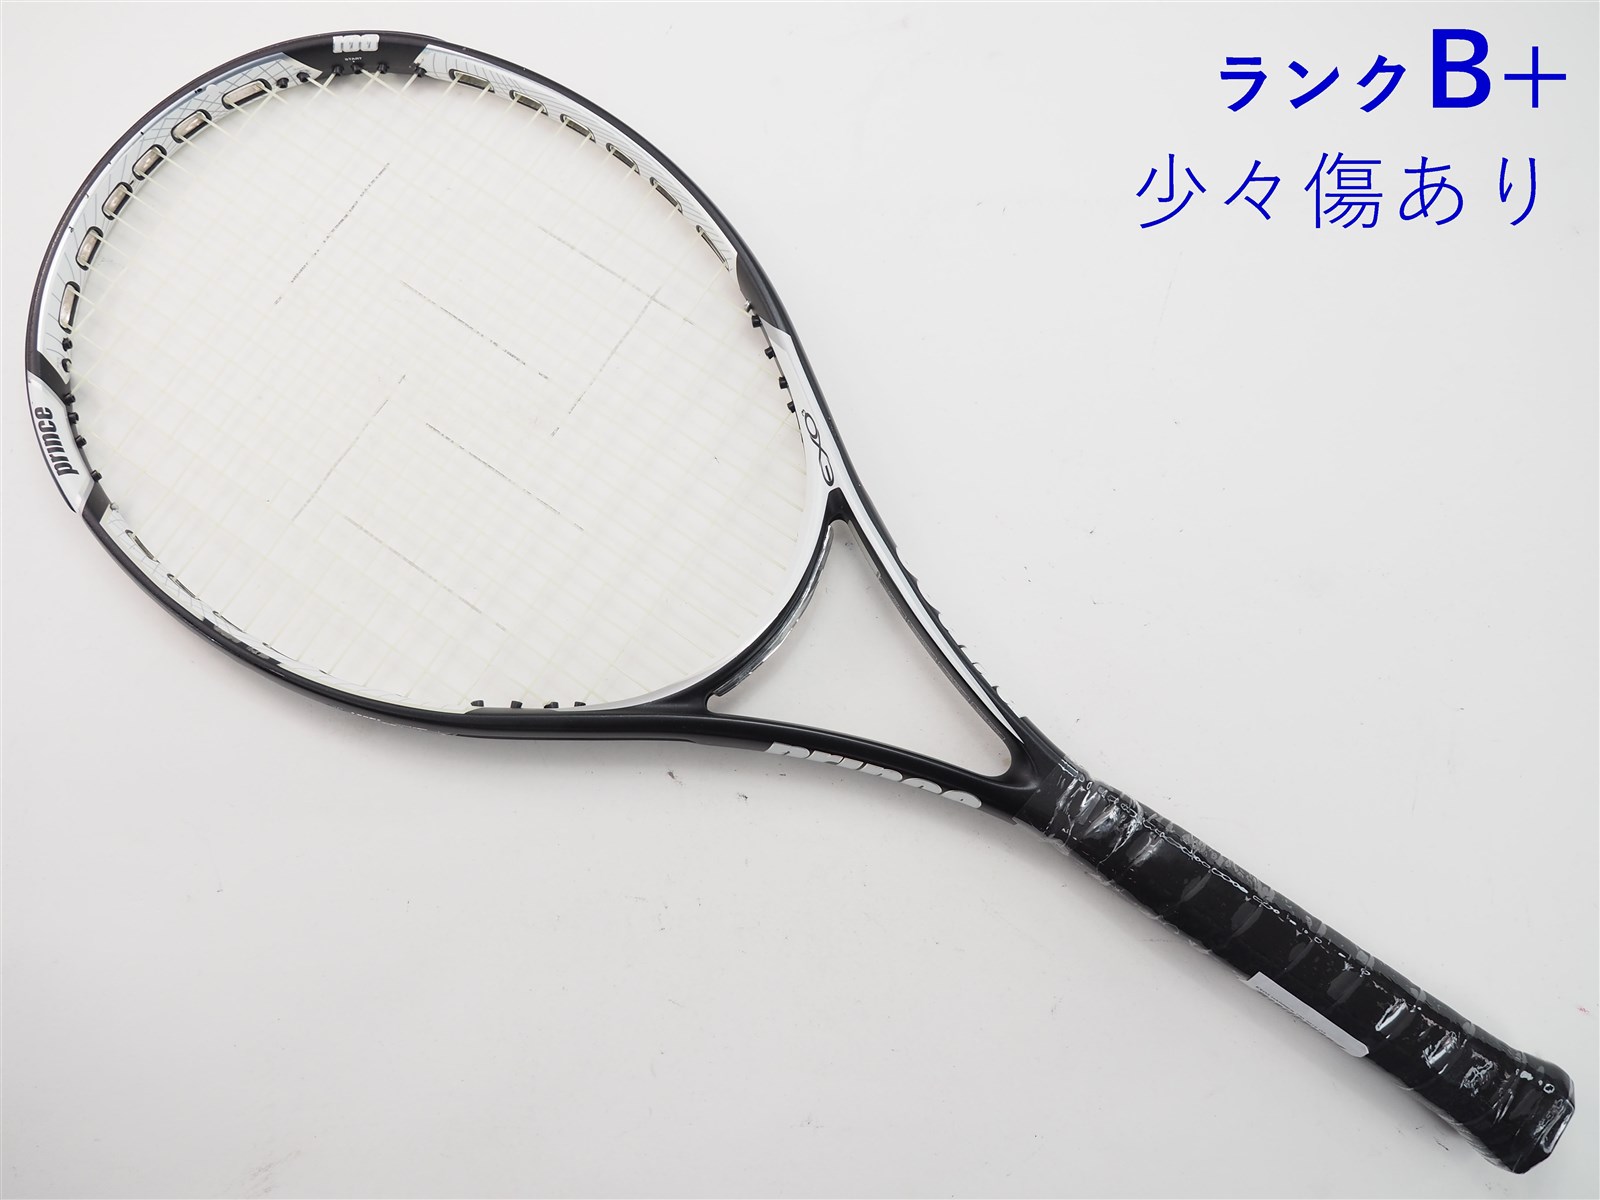 テニスラケット プリンス イーエックスオースリー グラファイト 105T